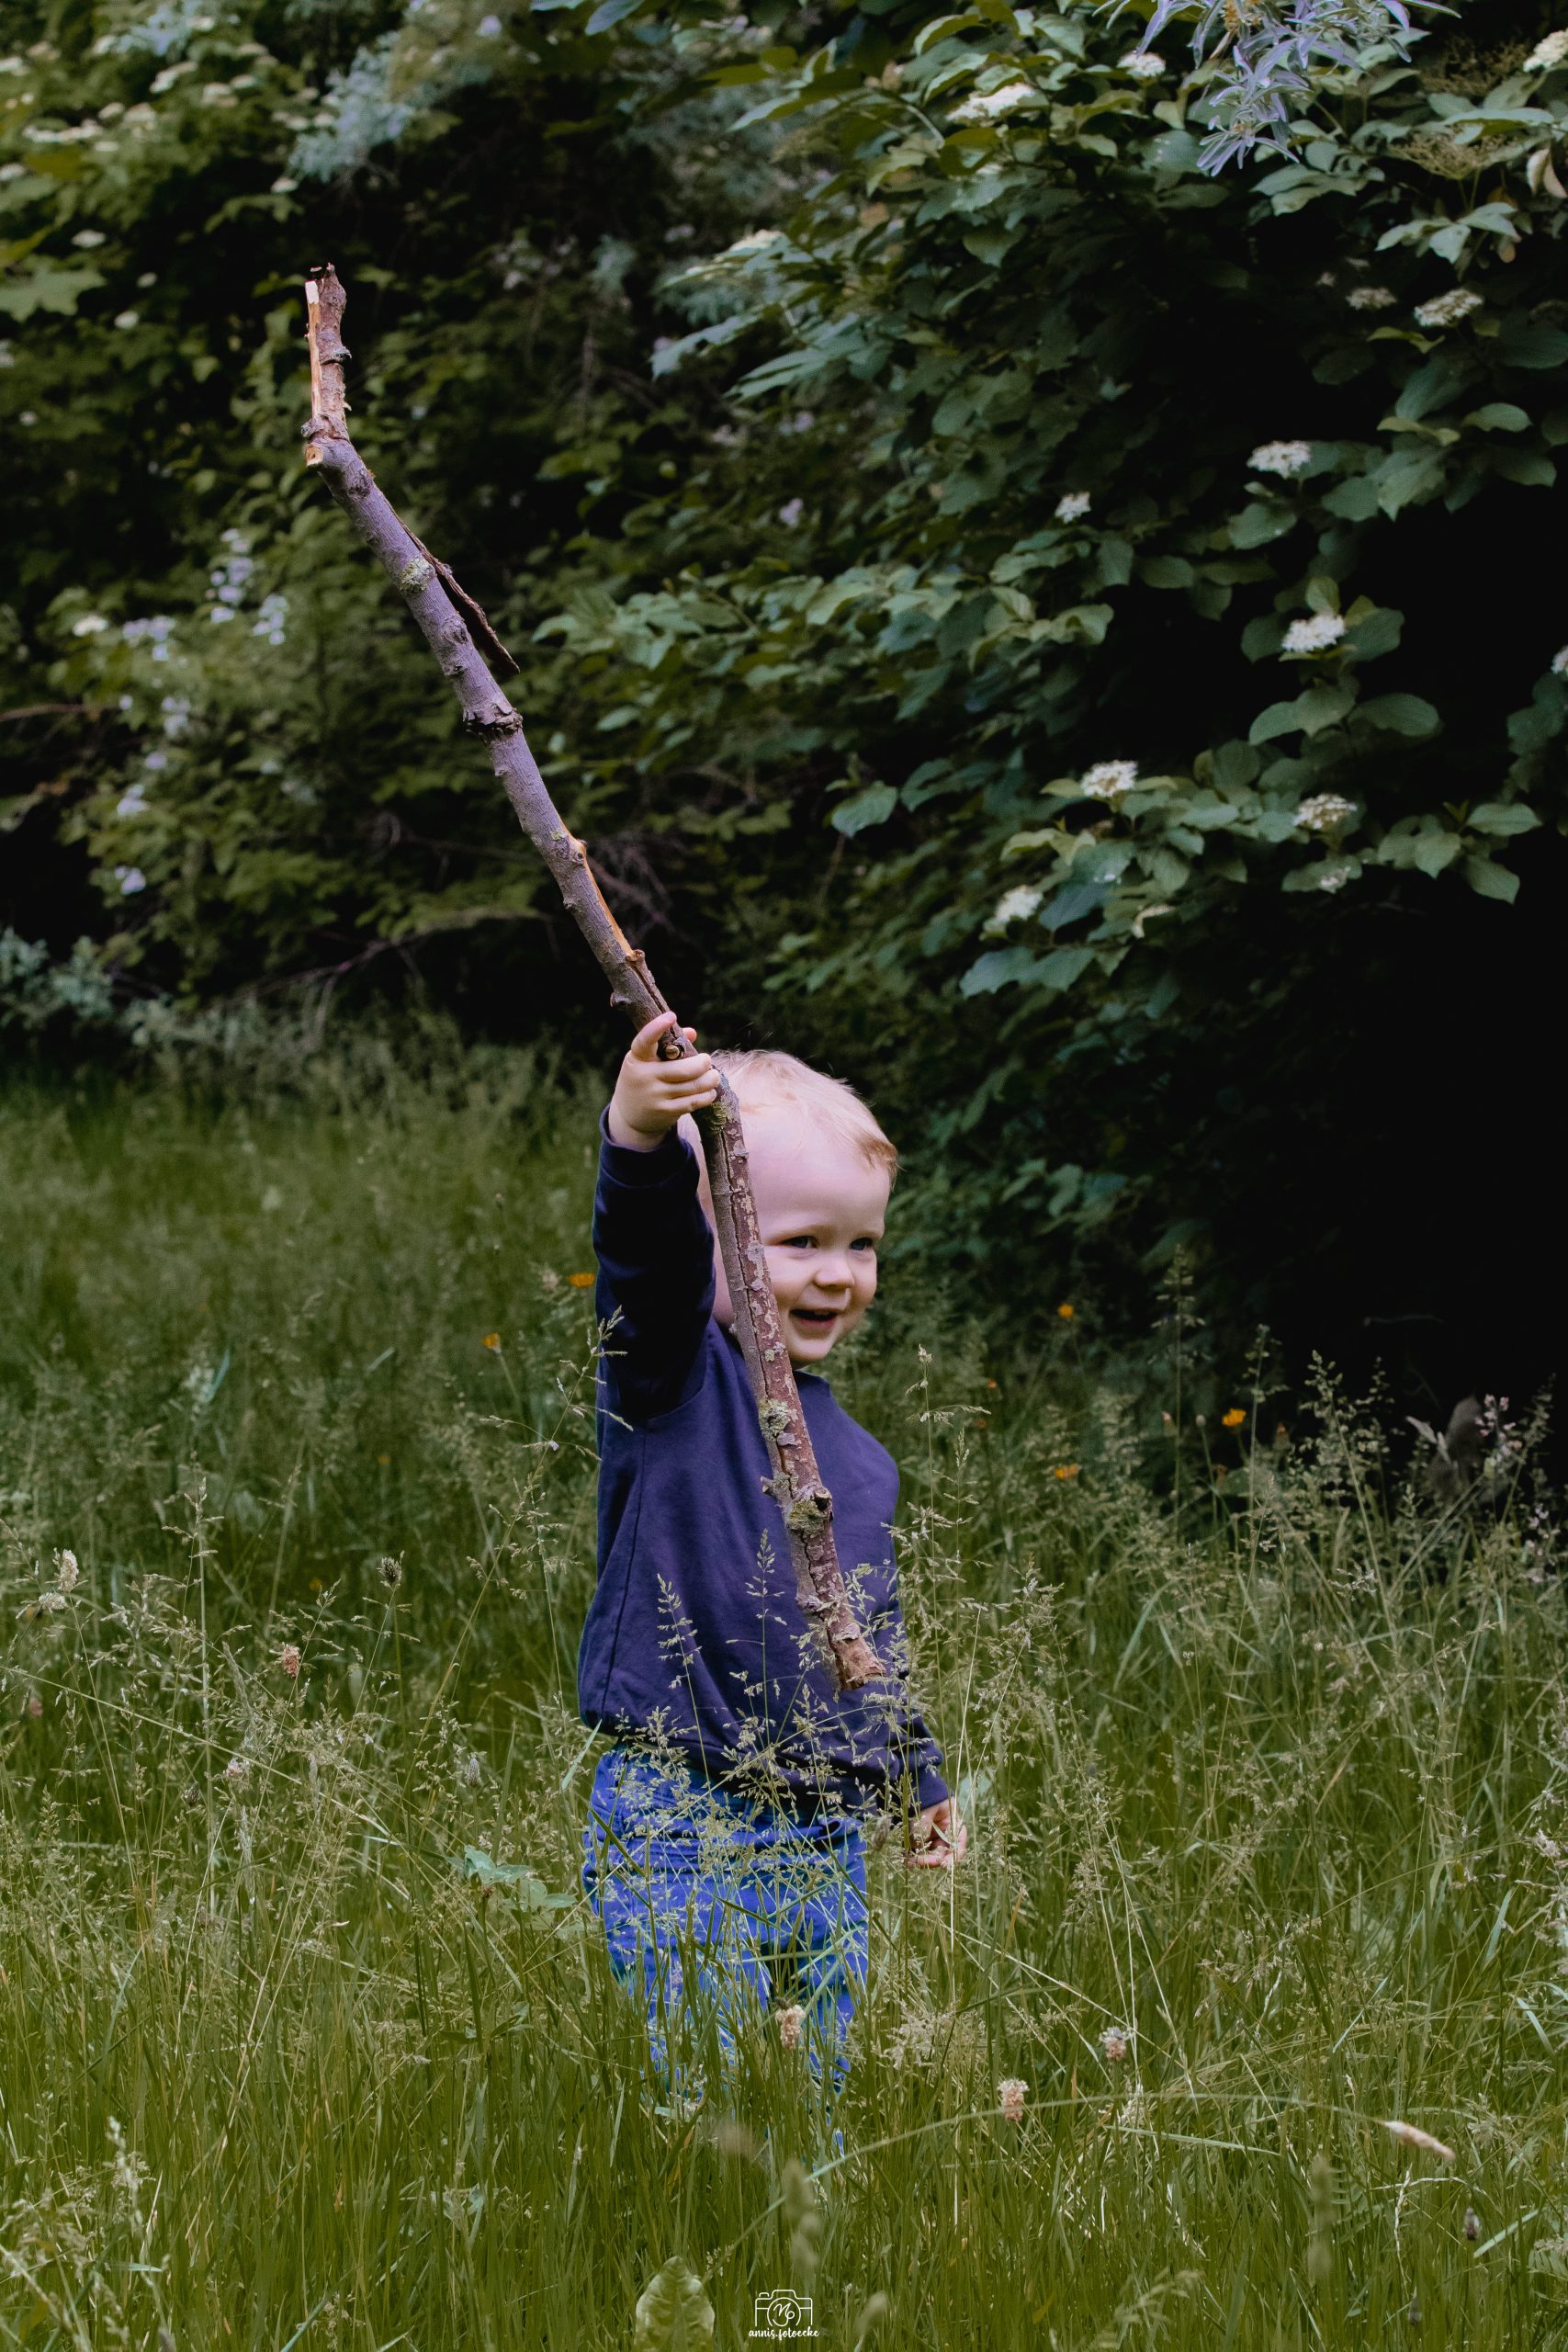 Fotoshooting mit spielendem Kind auf der Wiese.